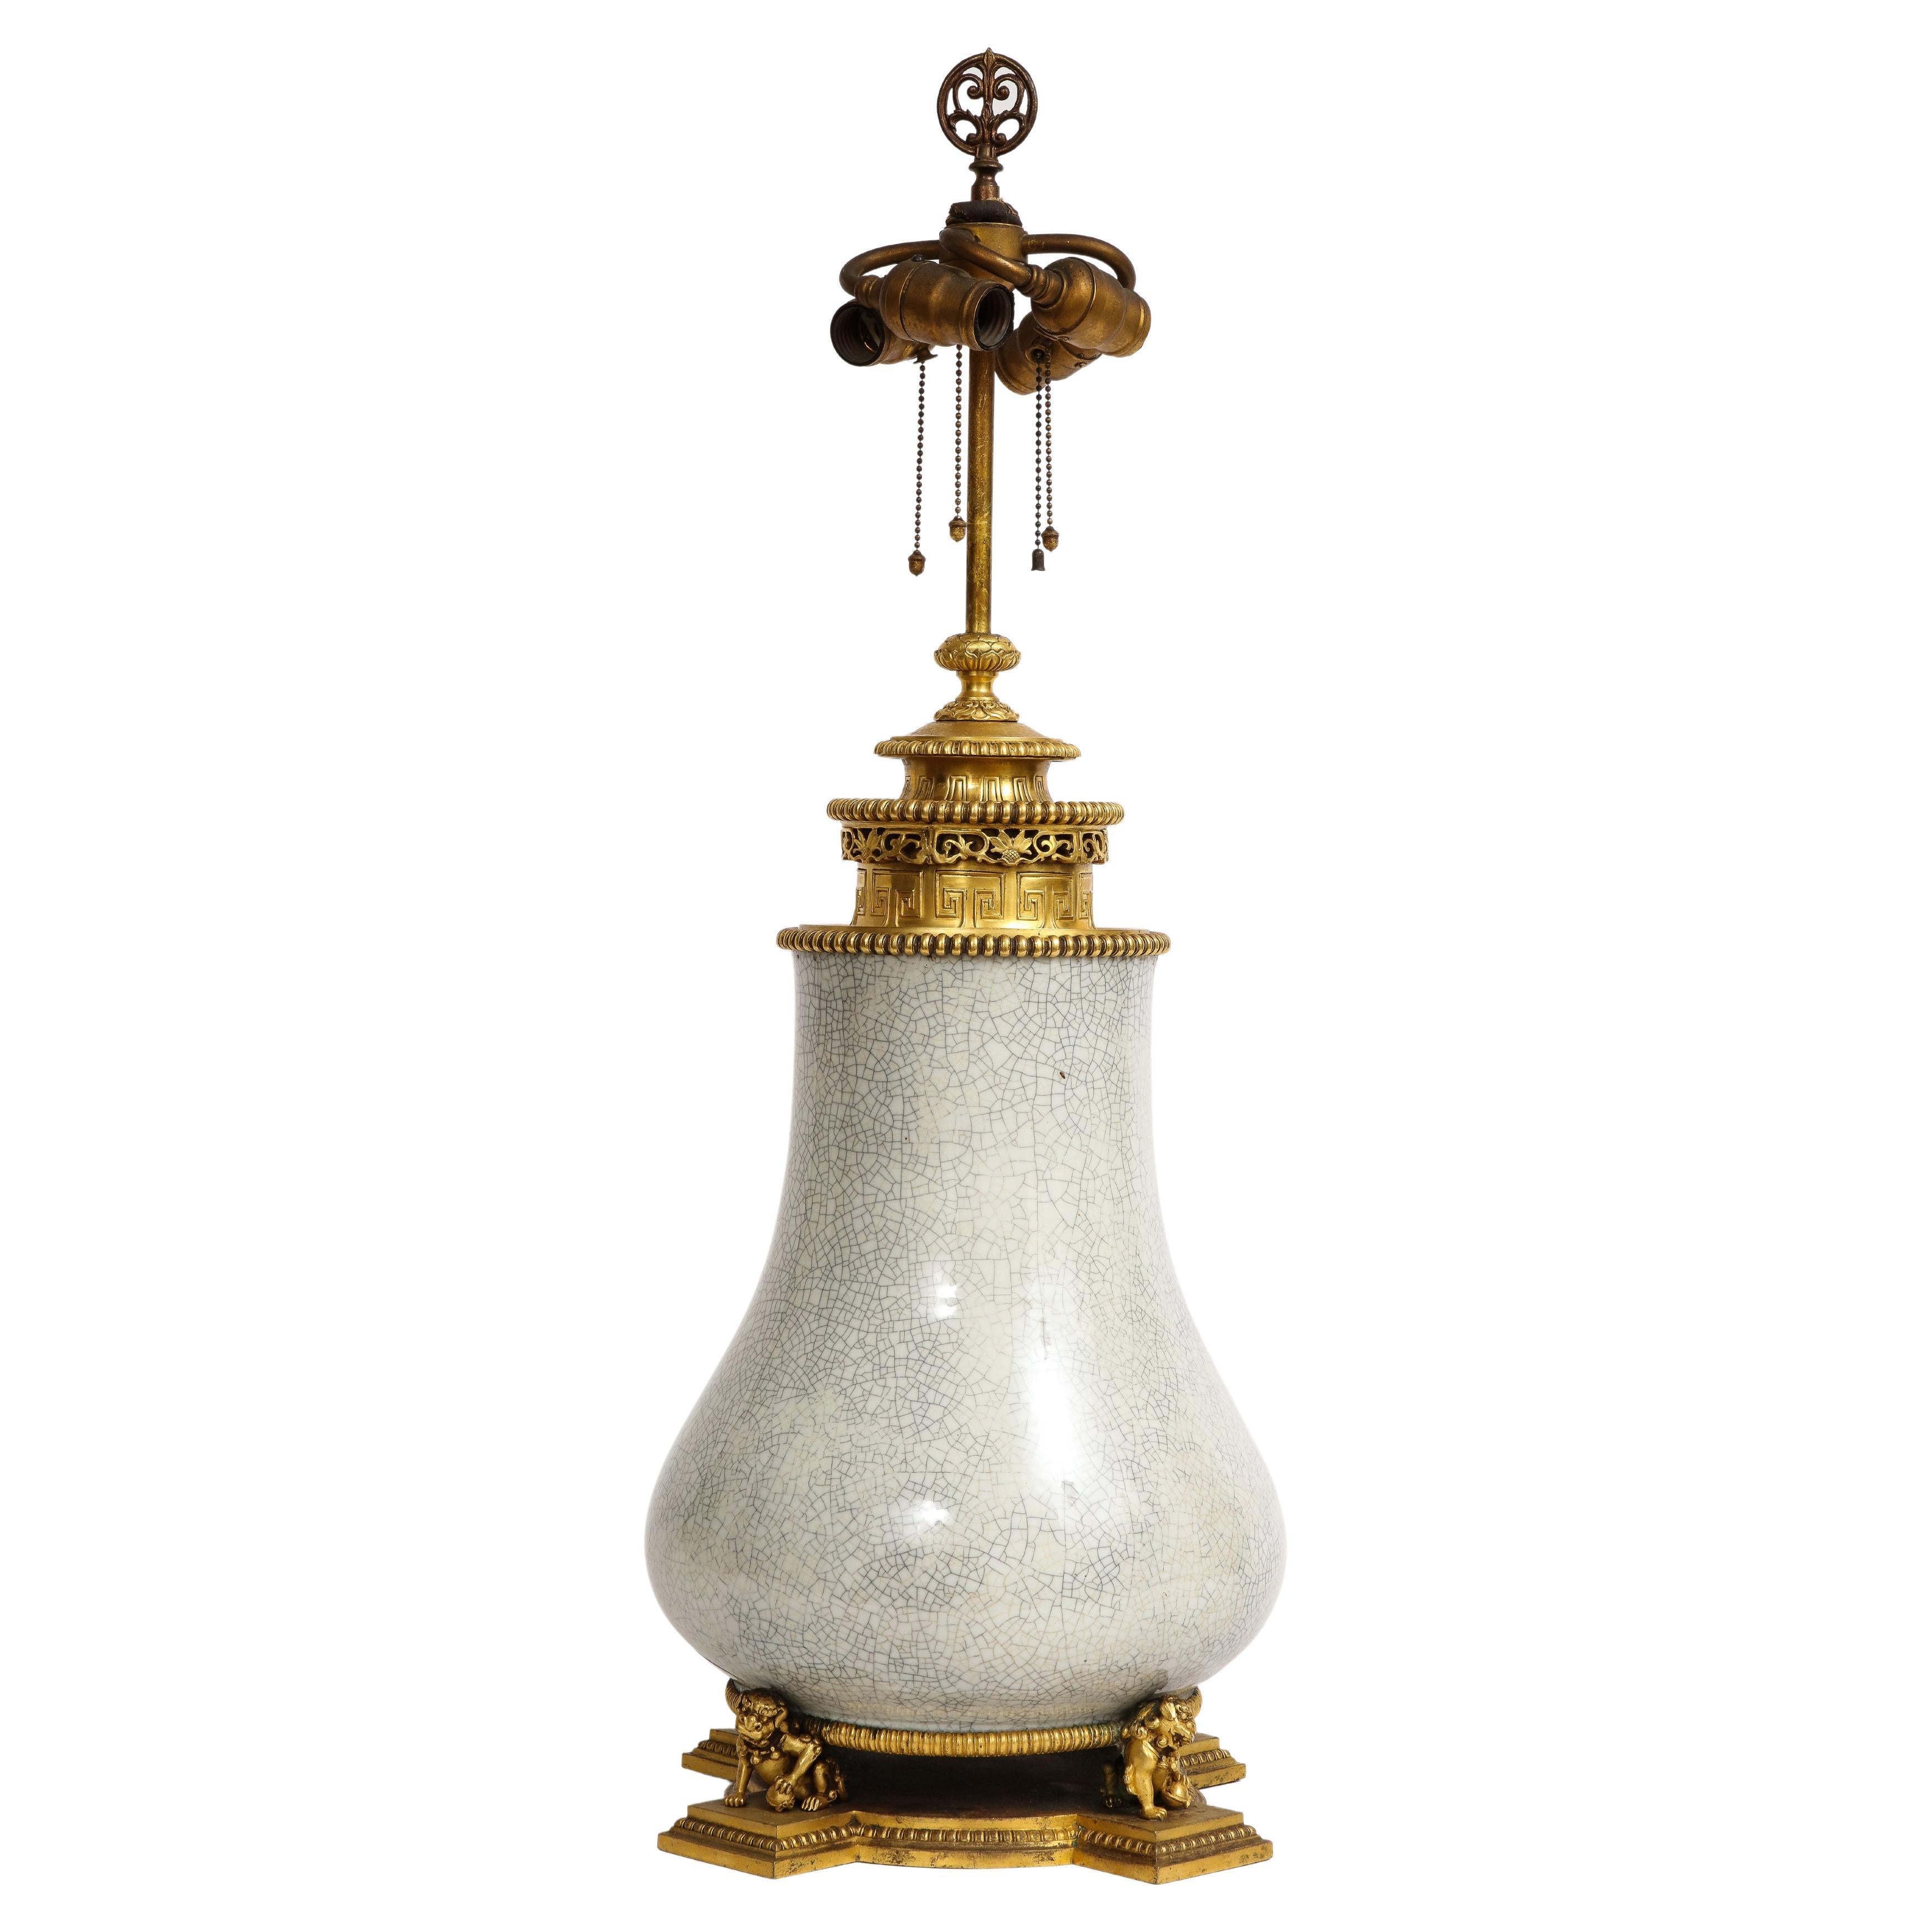 Lampe chinoise en porcelaine céladon craquelé montée en bronze doré et marquée E.F Caldwell, années 1800